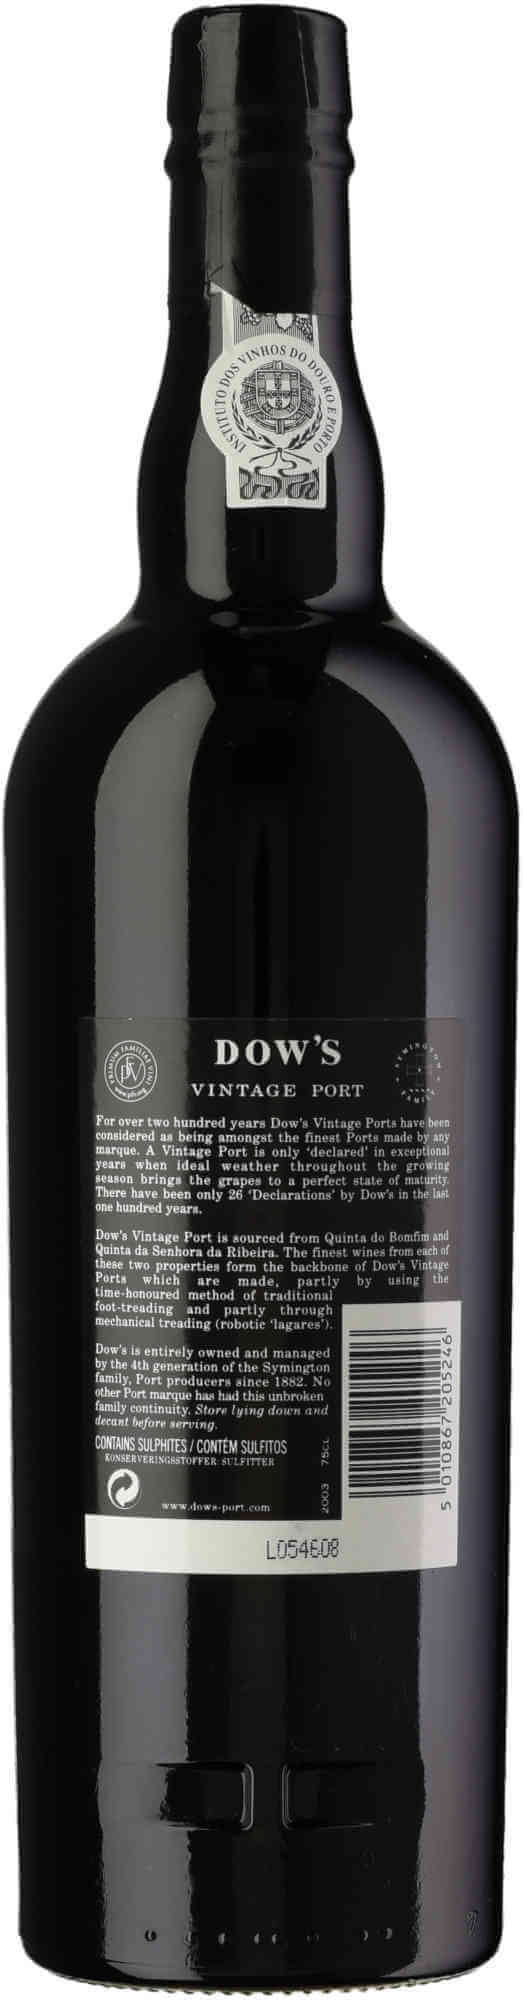 Dows-Vintage-Port-2003-back